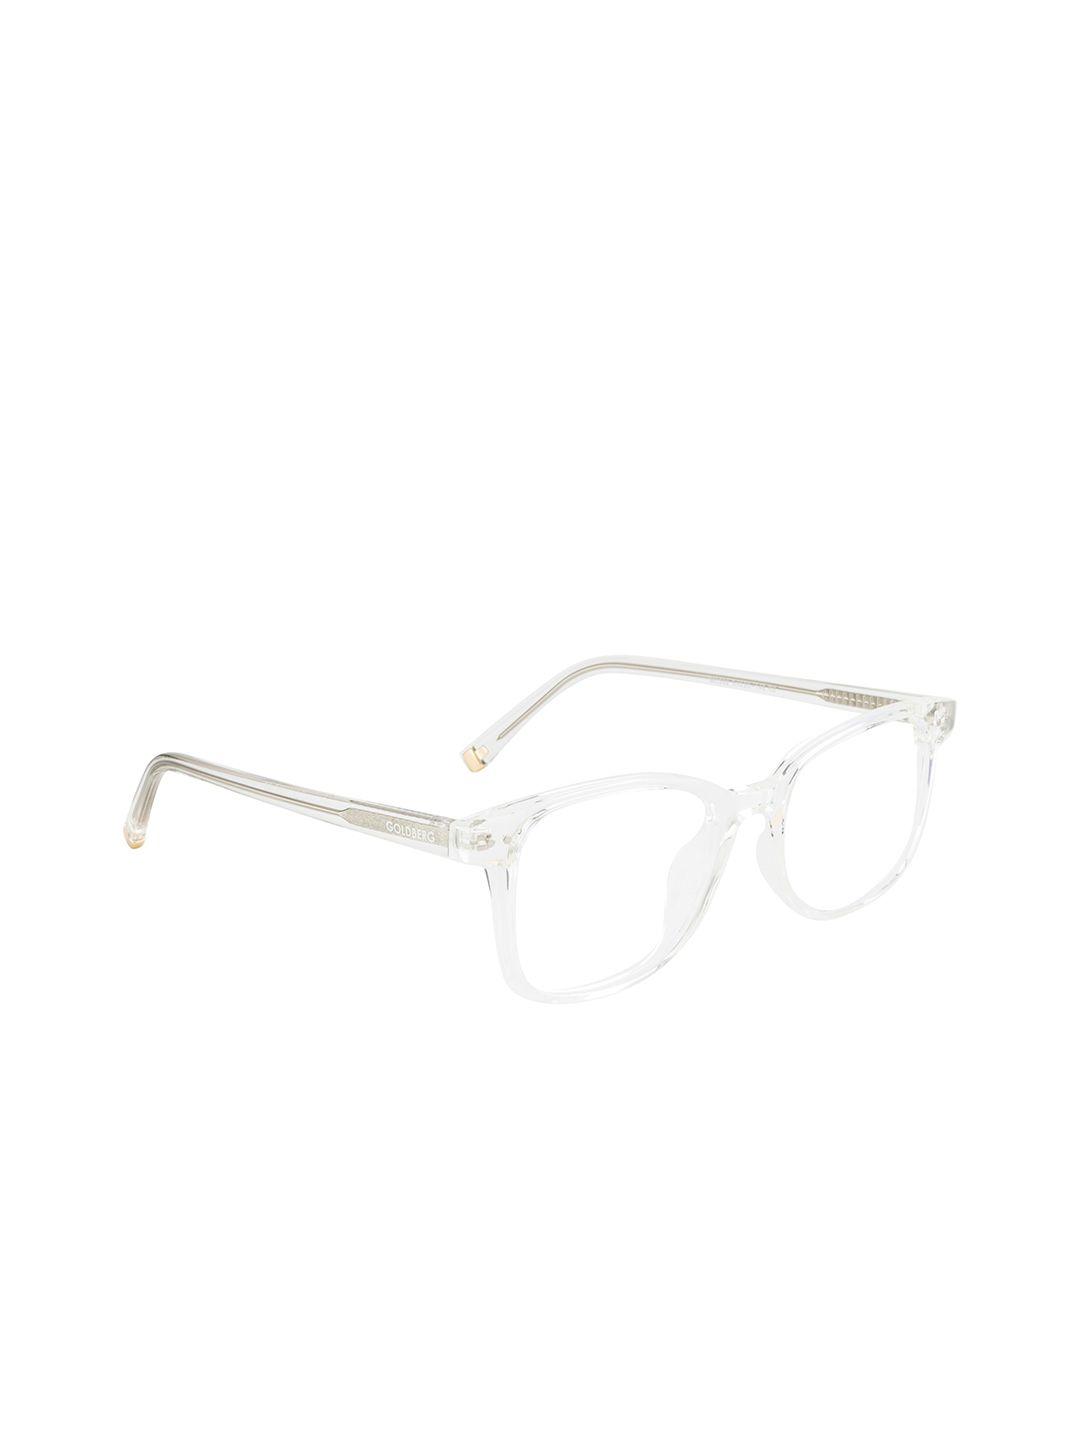 gold-berg-unisex-transparent-full-rim-square-frames-eyeglasses